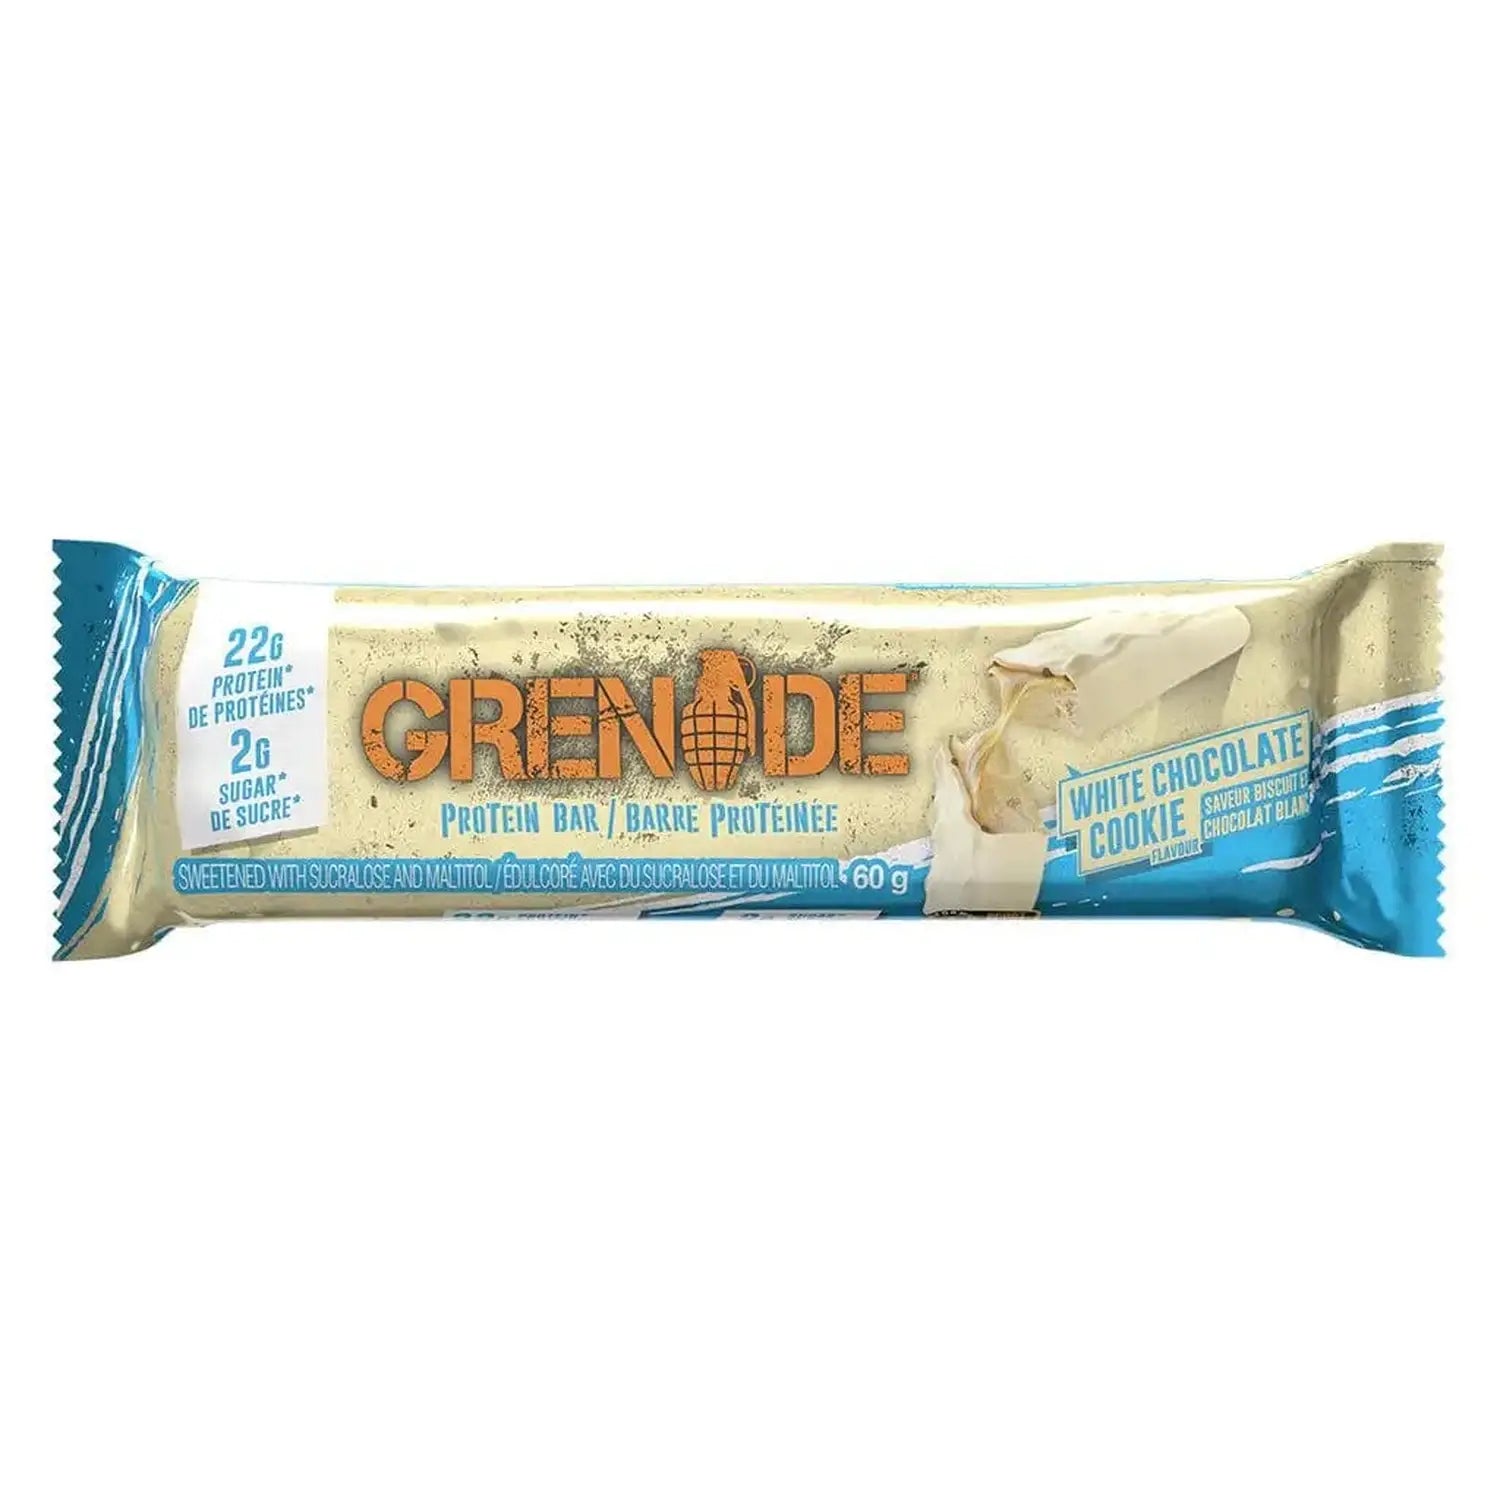 Grenade Grenade Protein Bar 60 g White Chocolate Cookie kaufen bei HighPowered.ch